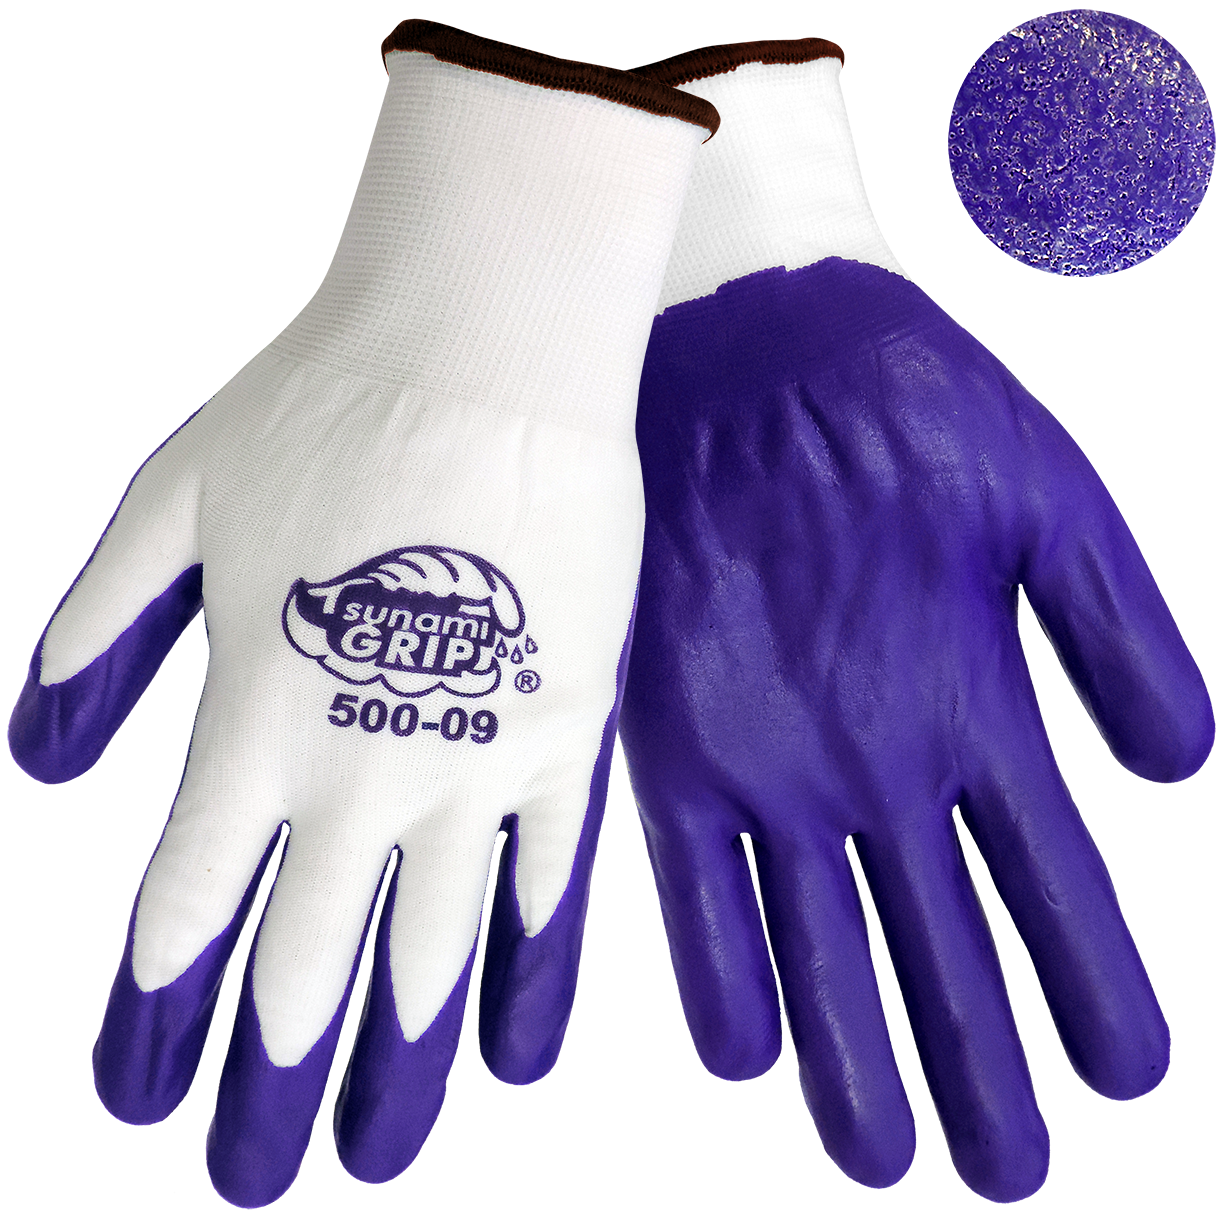 Tsunami Grip Gloves